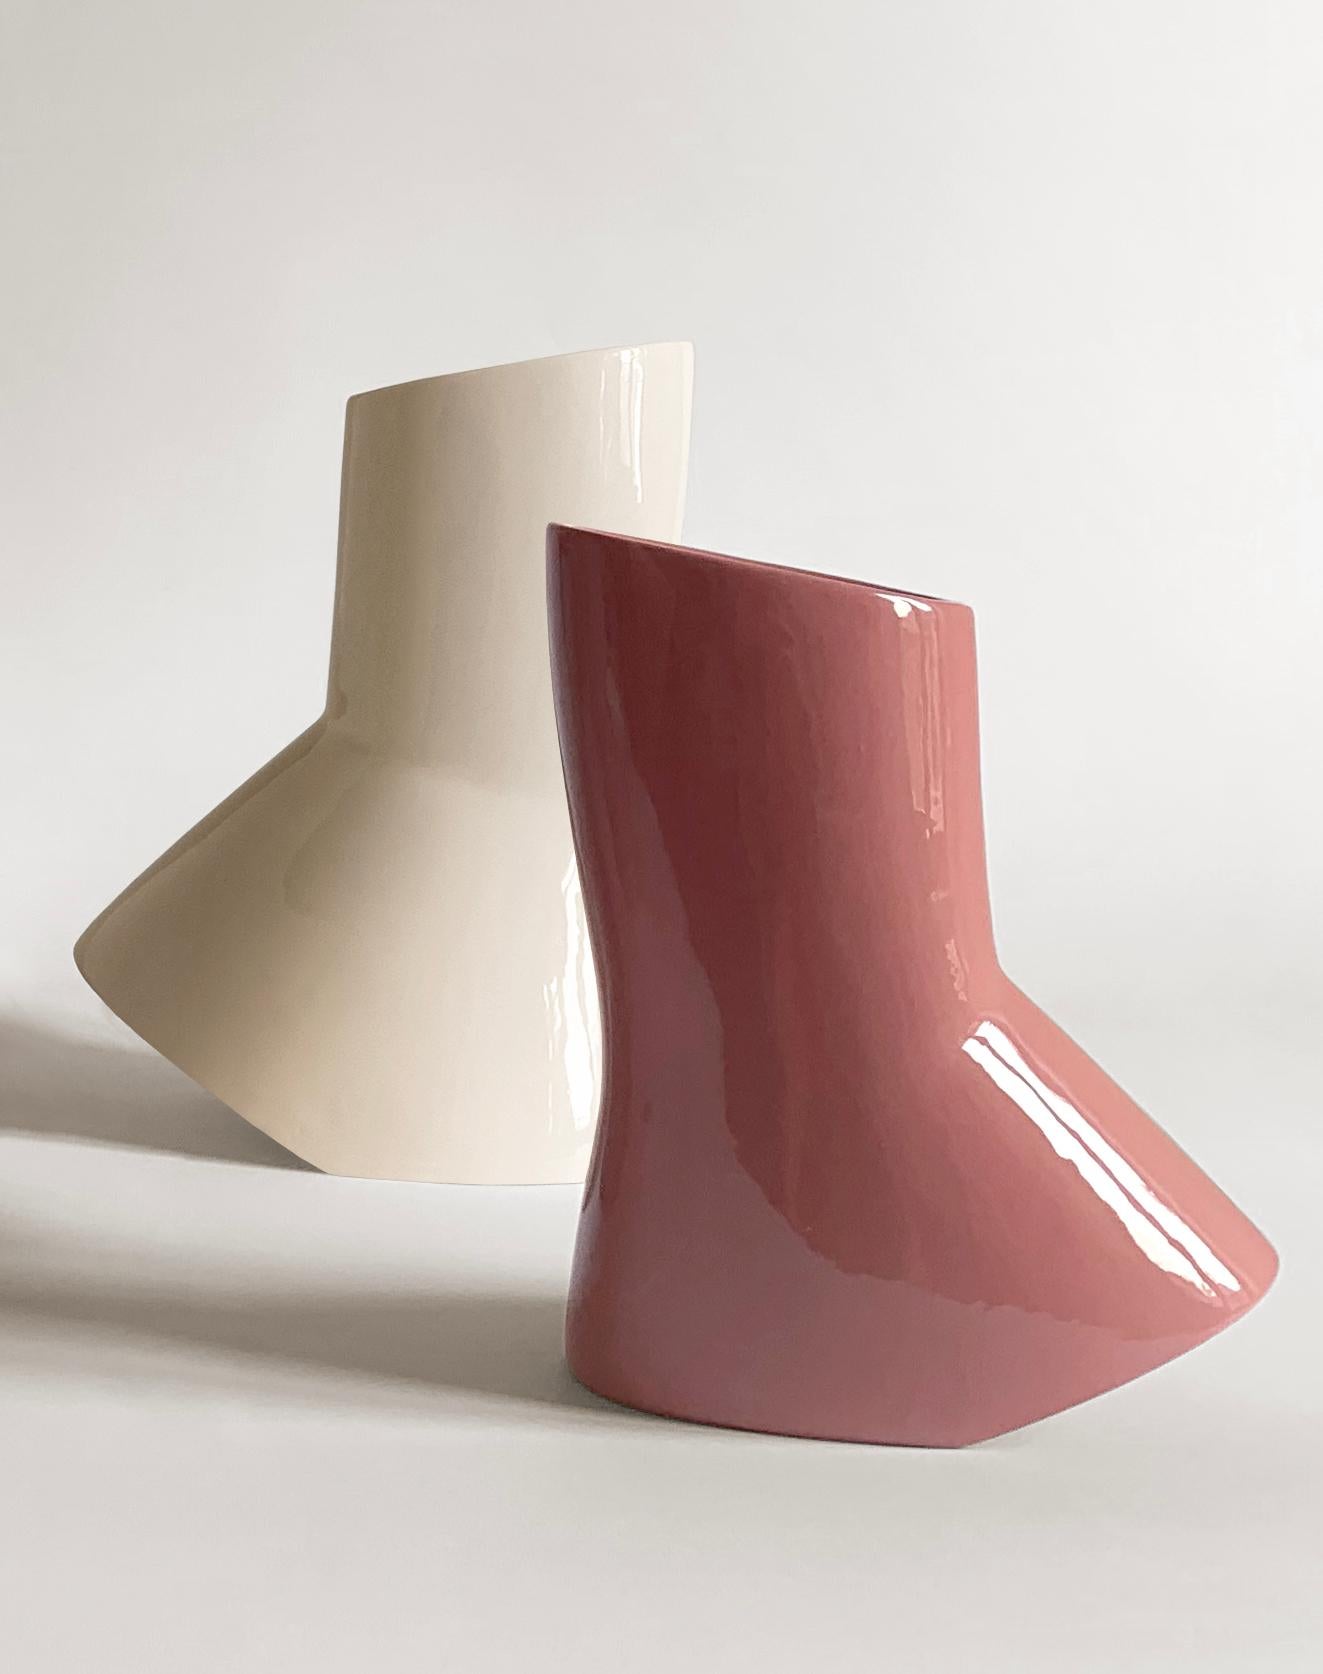 Modern Set of 2 Menadi Ceramic Vases by Studio Zero For Sale